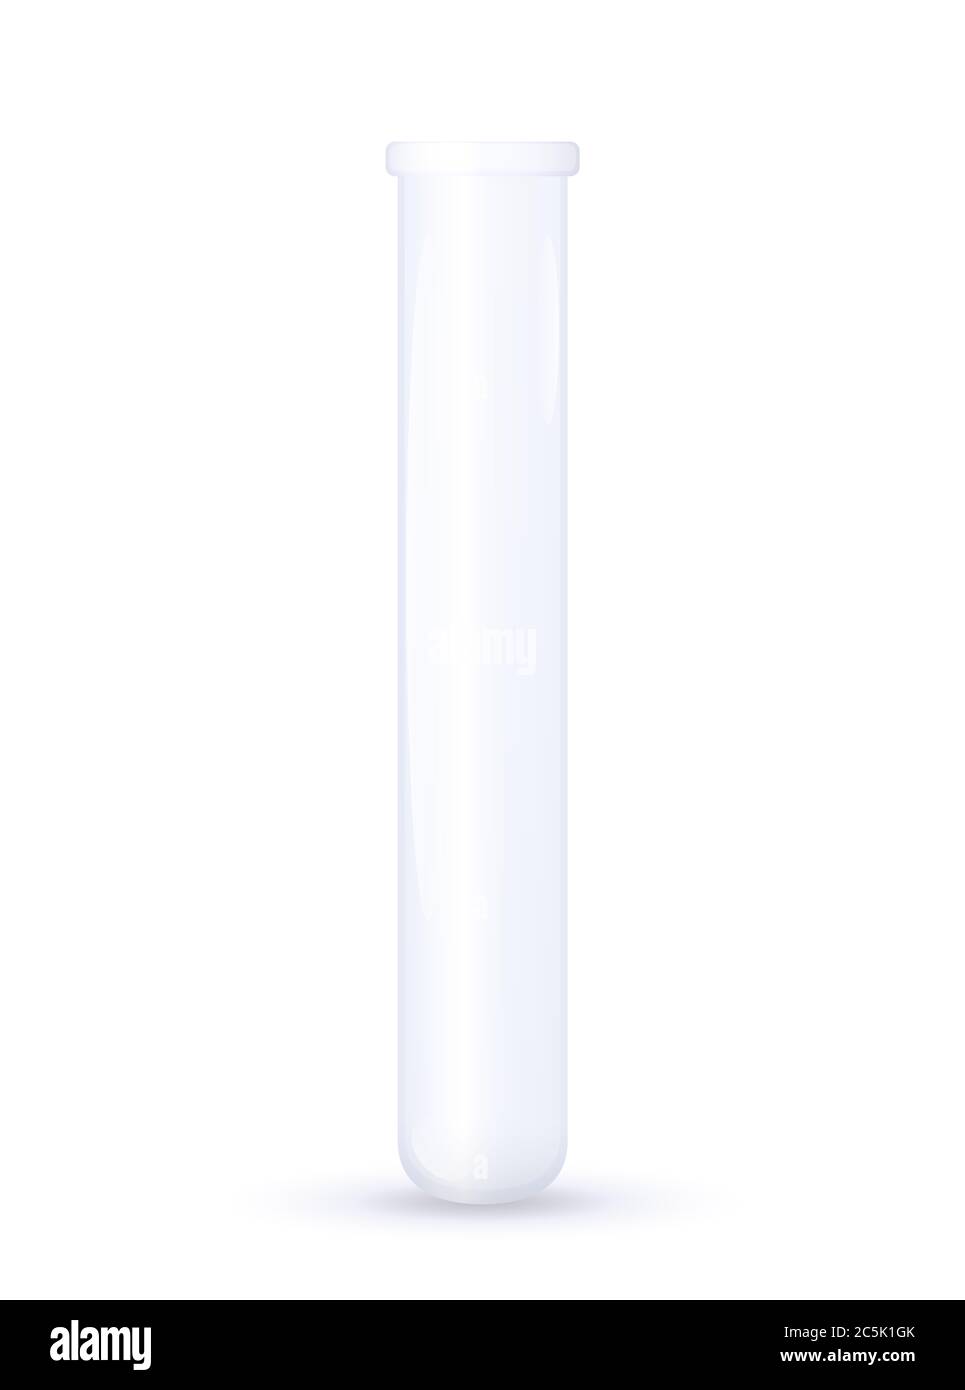 Reagenzglas. Leere Labor- und Pharmazeutische Glaswaren für chemische, biologische und klinische Forschung, Analyse oder Experimente. Stockfoto